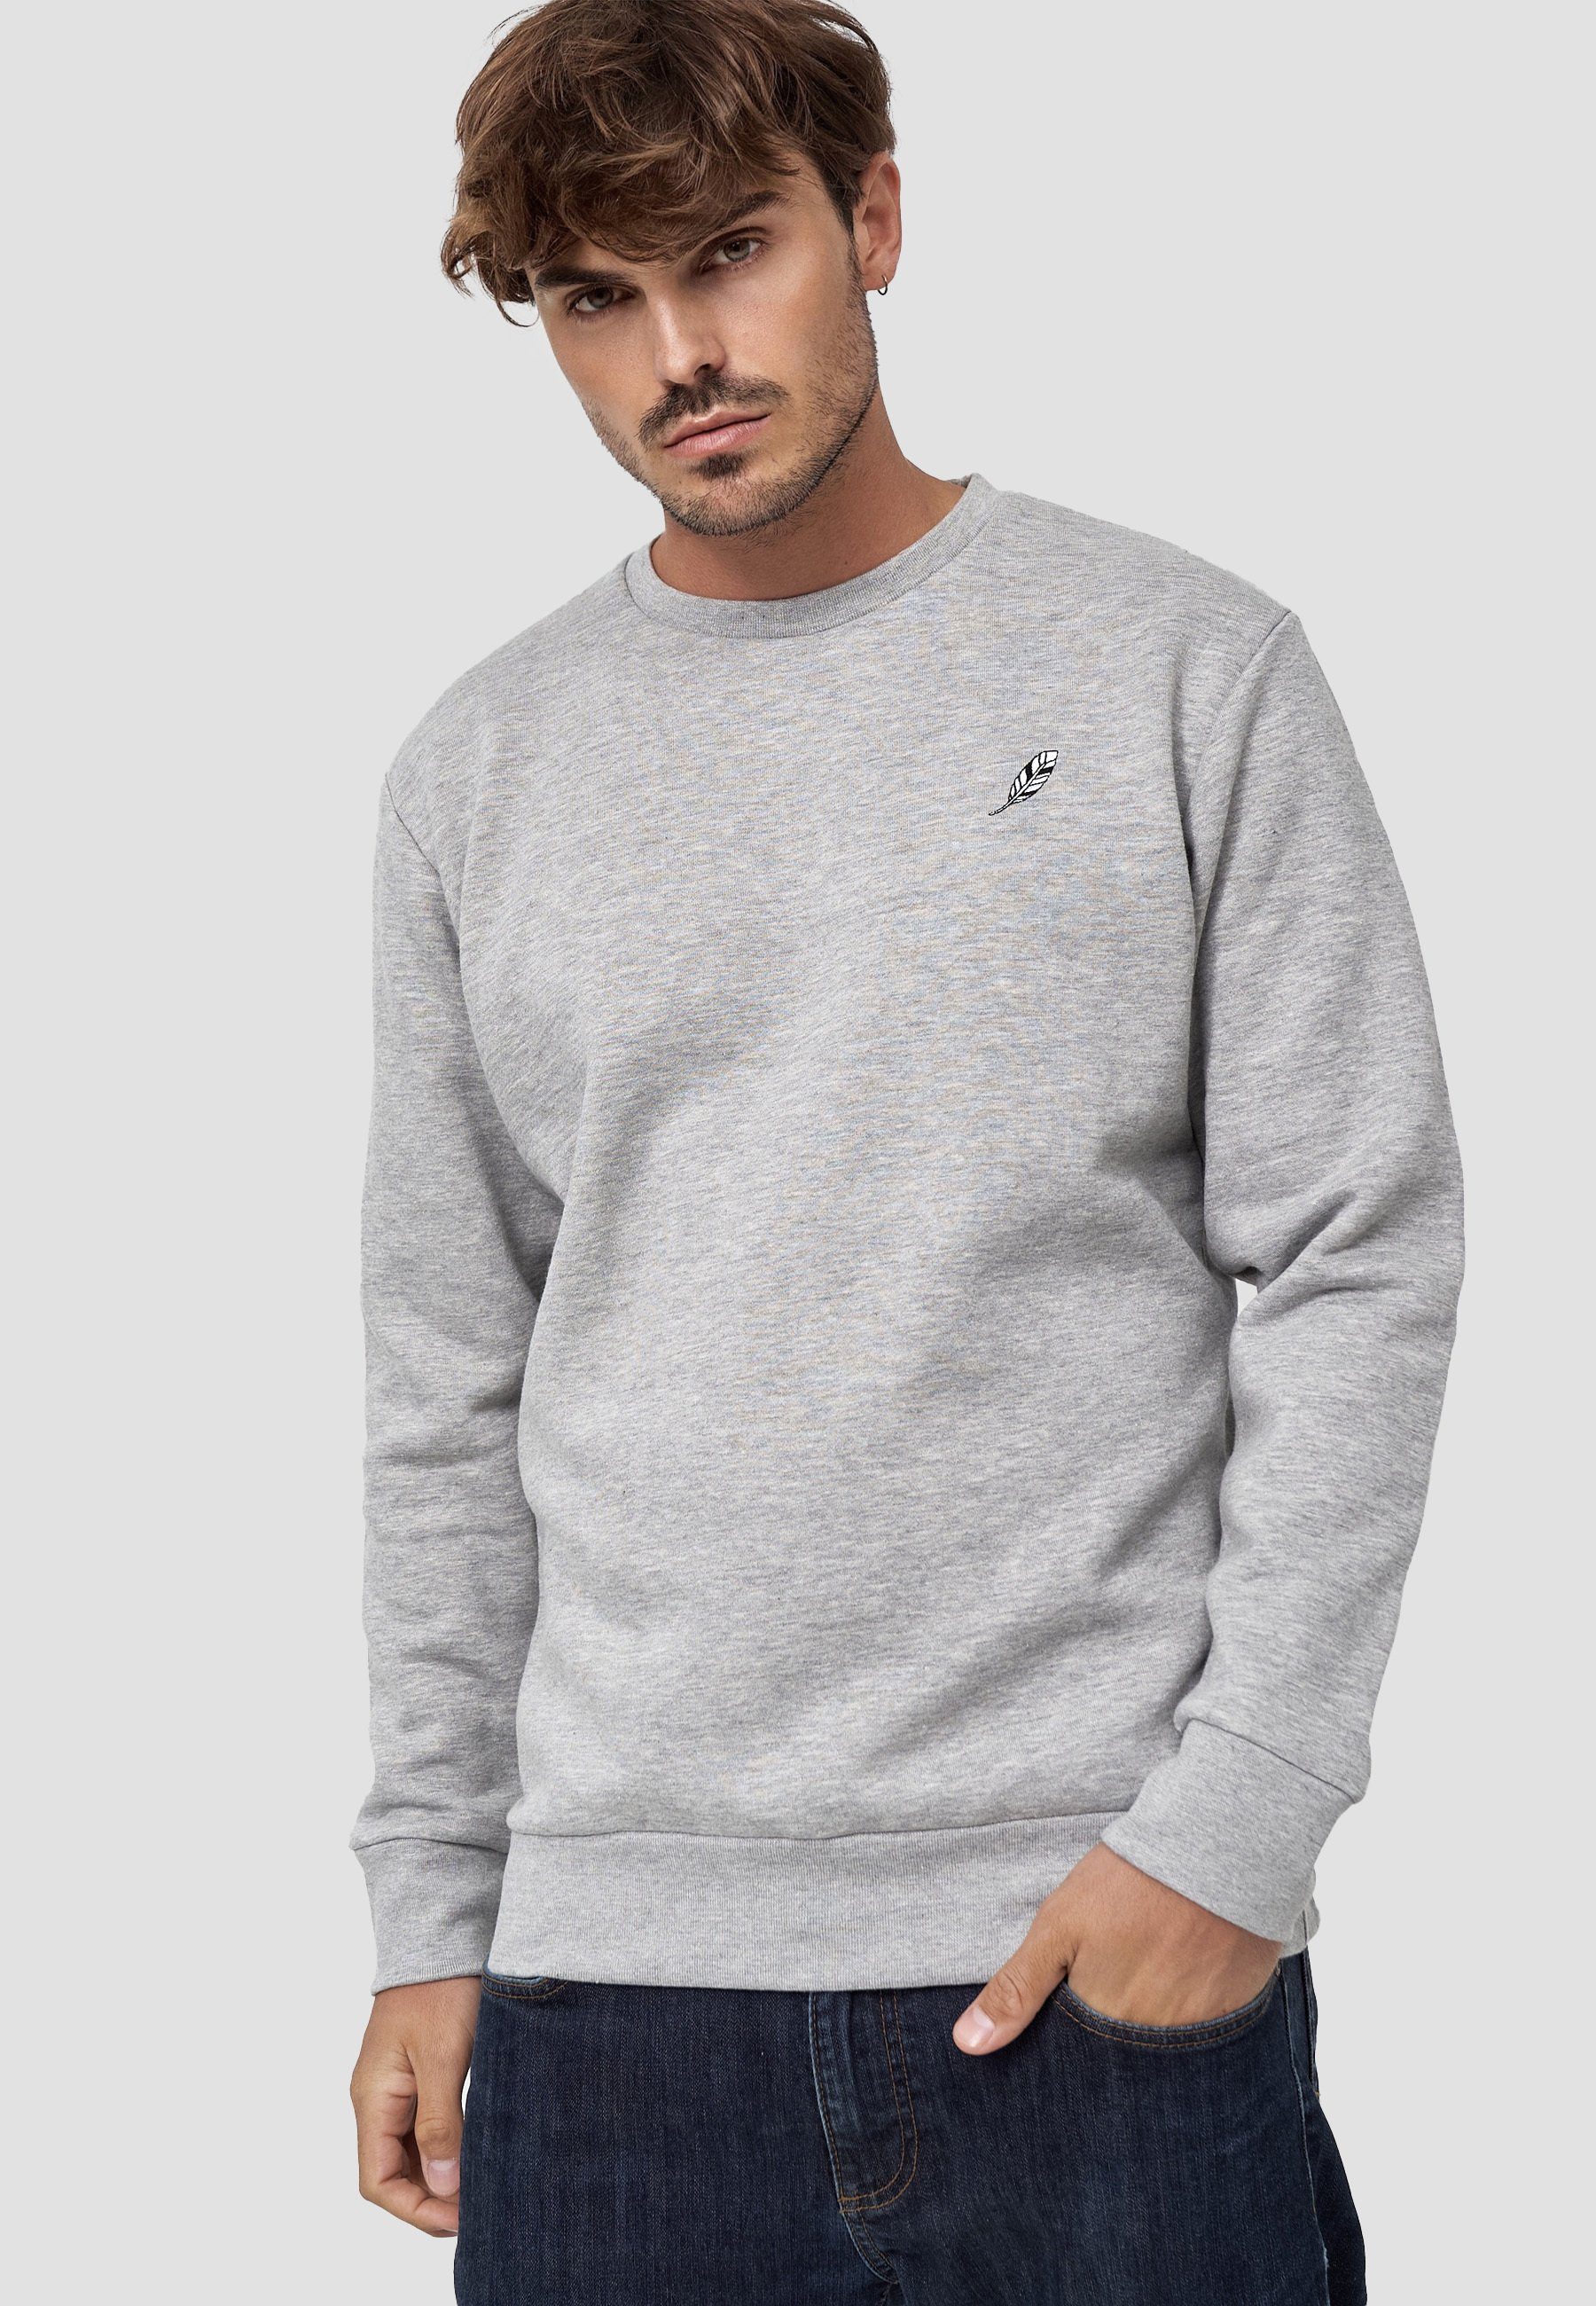 MIKON Sweatshirt Grey GOTS zertifizierte Bio-Baumwolle Feder